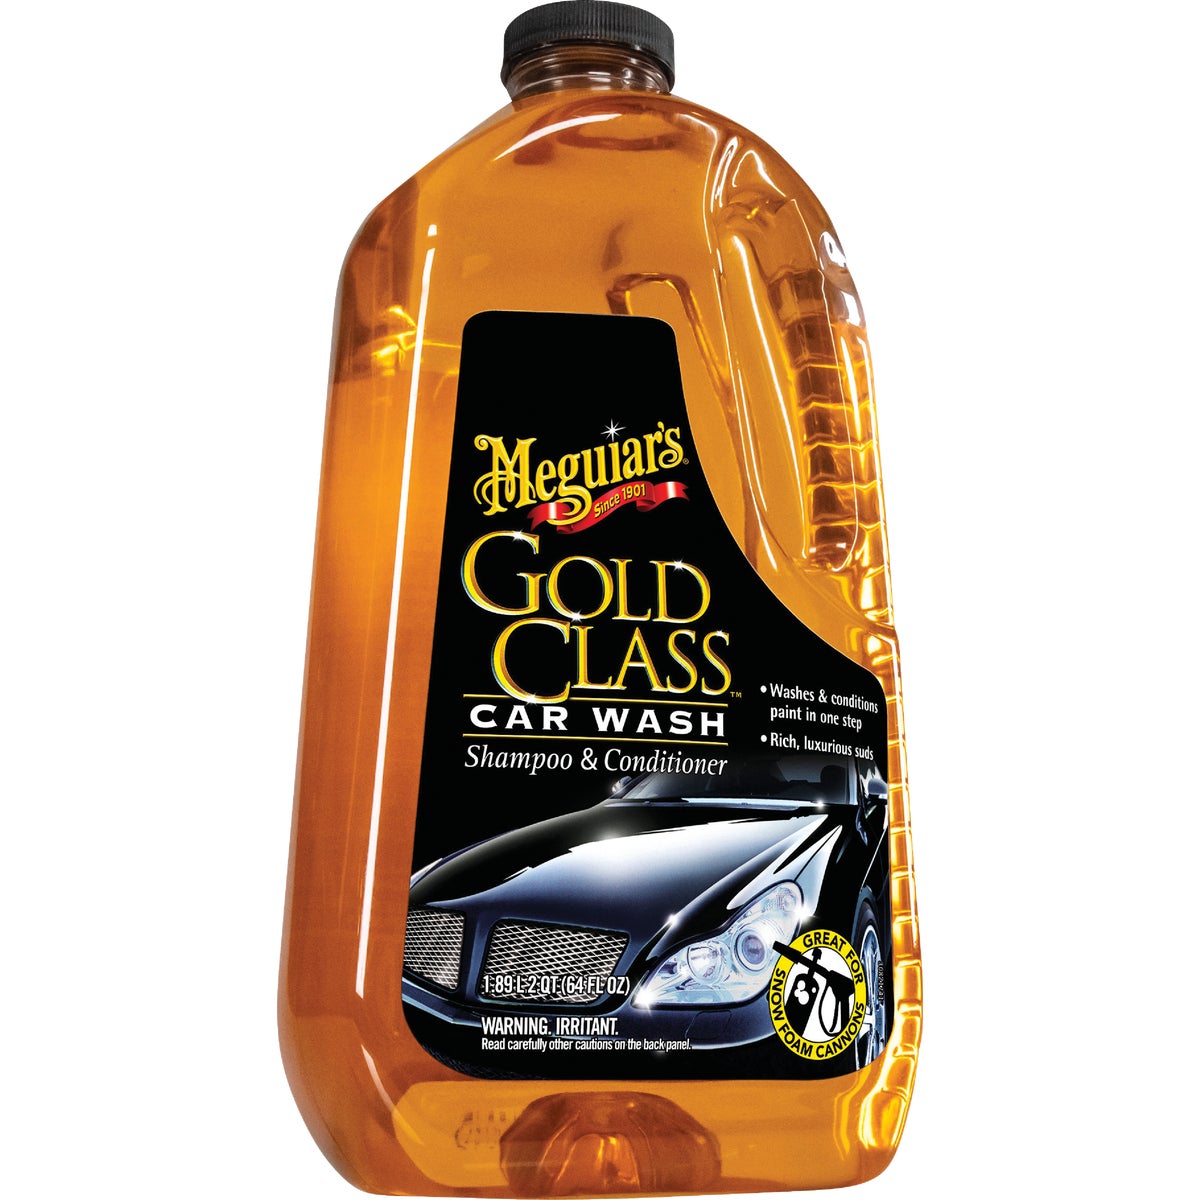  Meguiars 64 Oz. Liquid Gold Class Car Wash